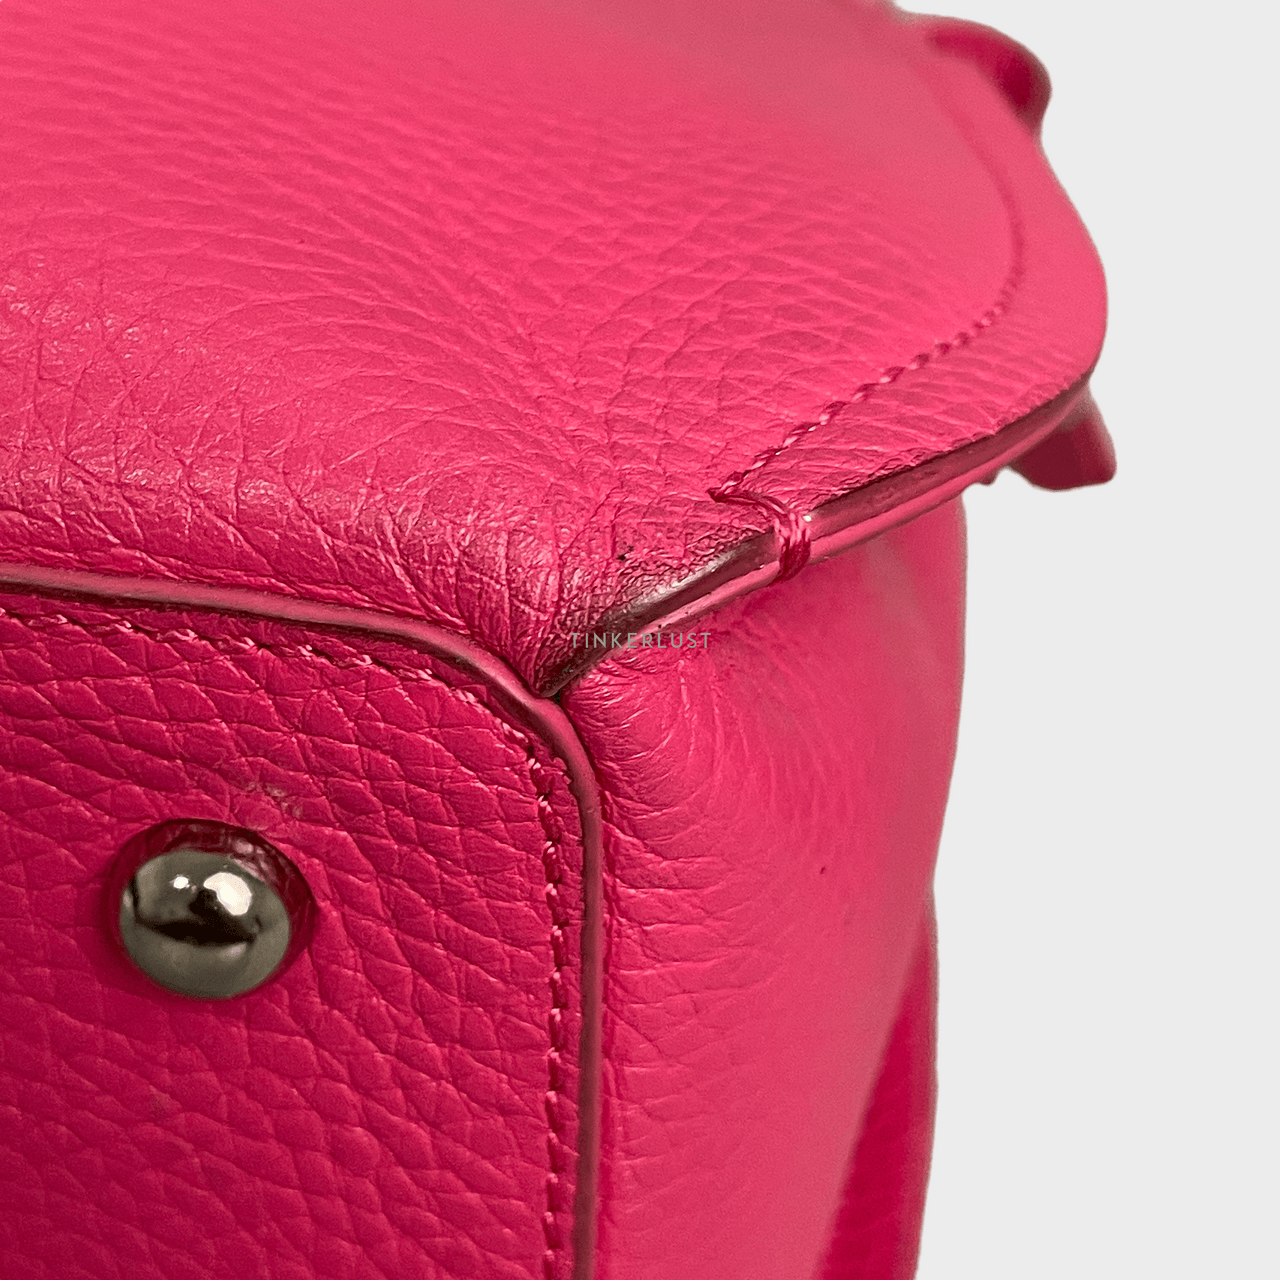 Tocco Toscano Pink Handbag